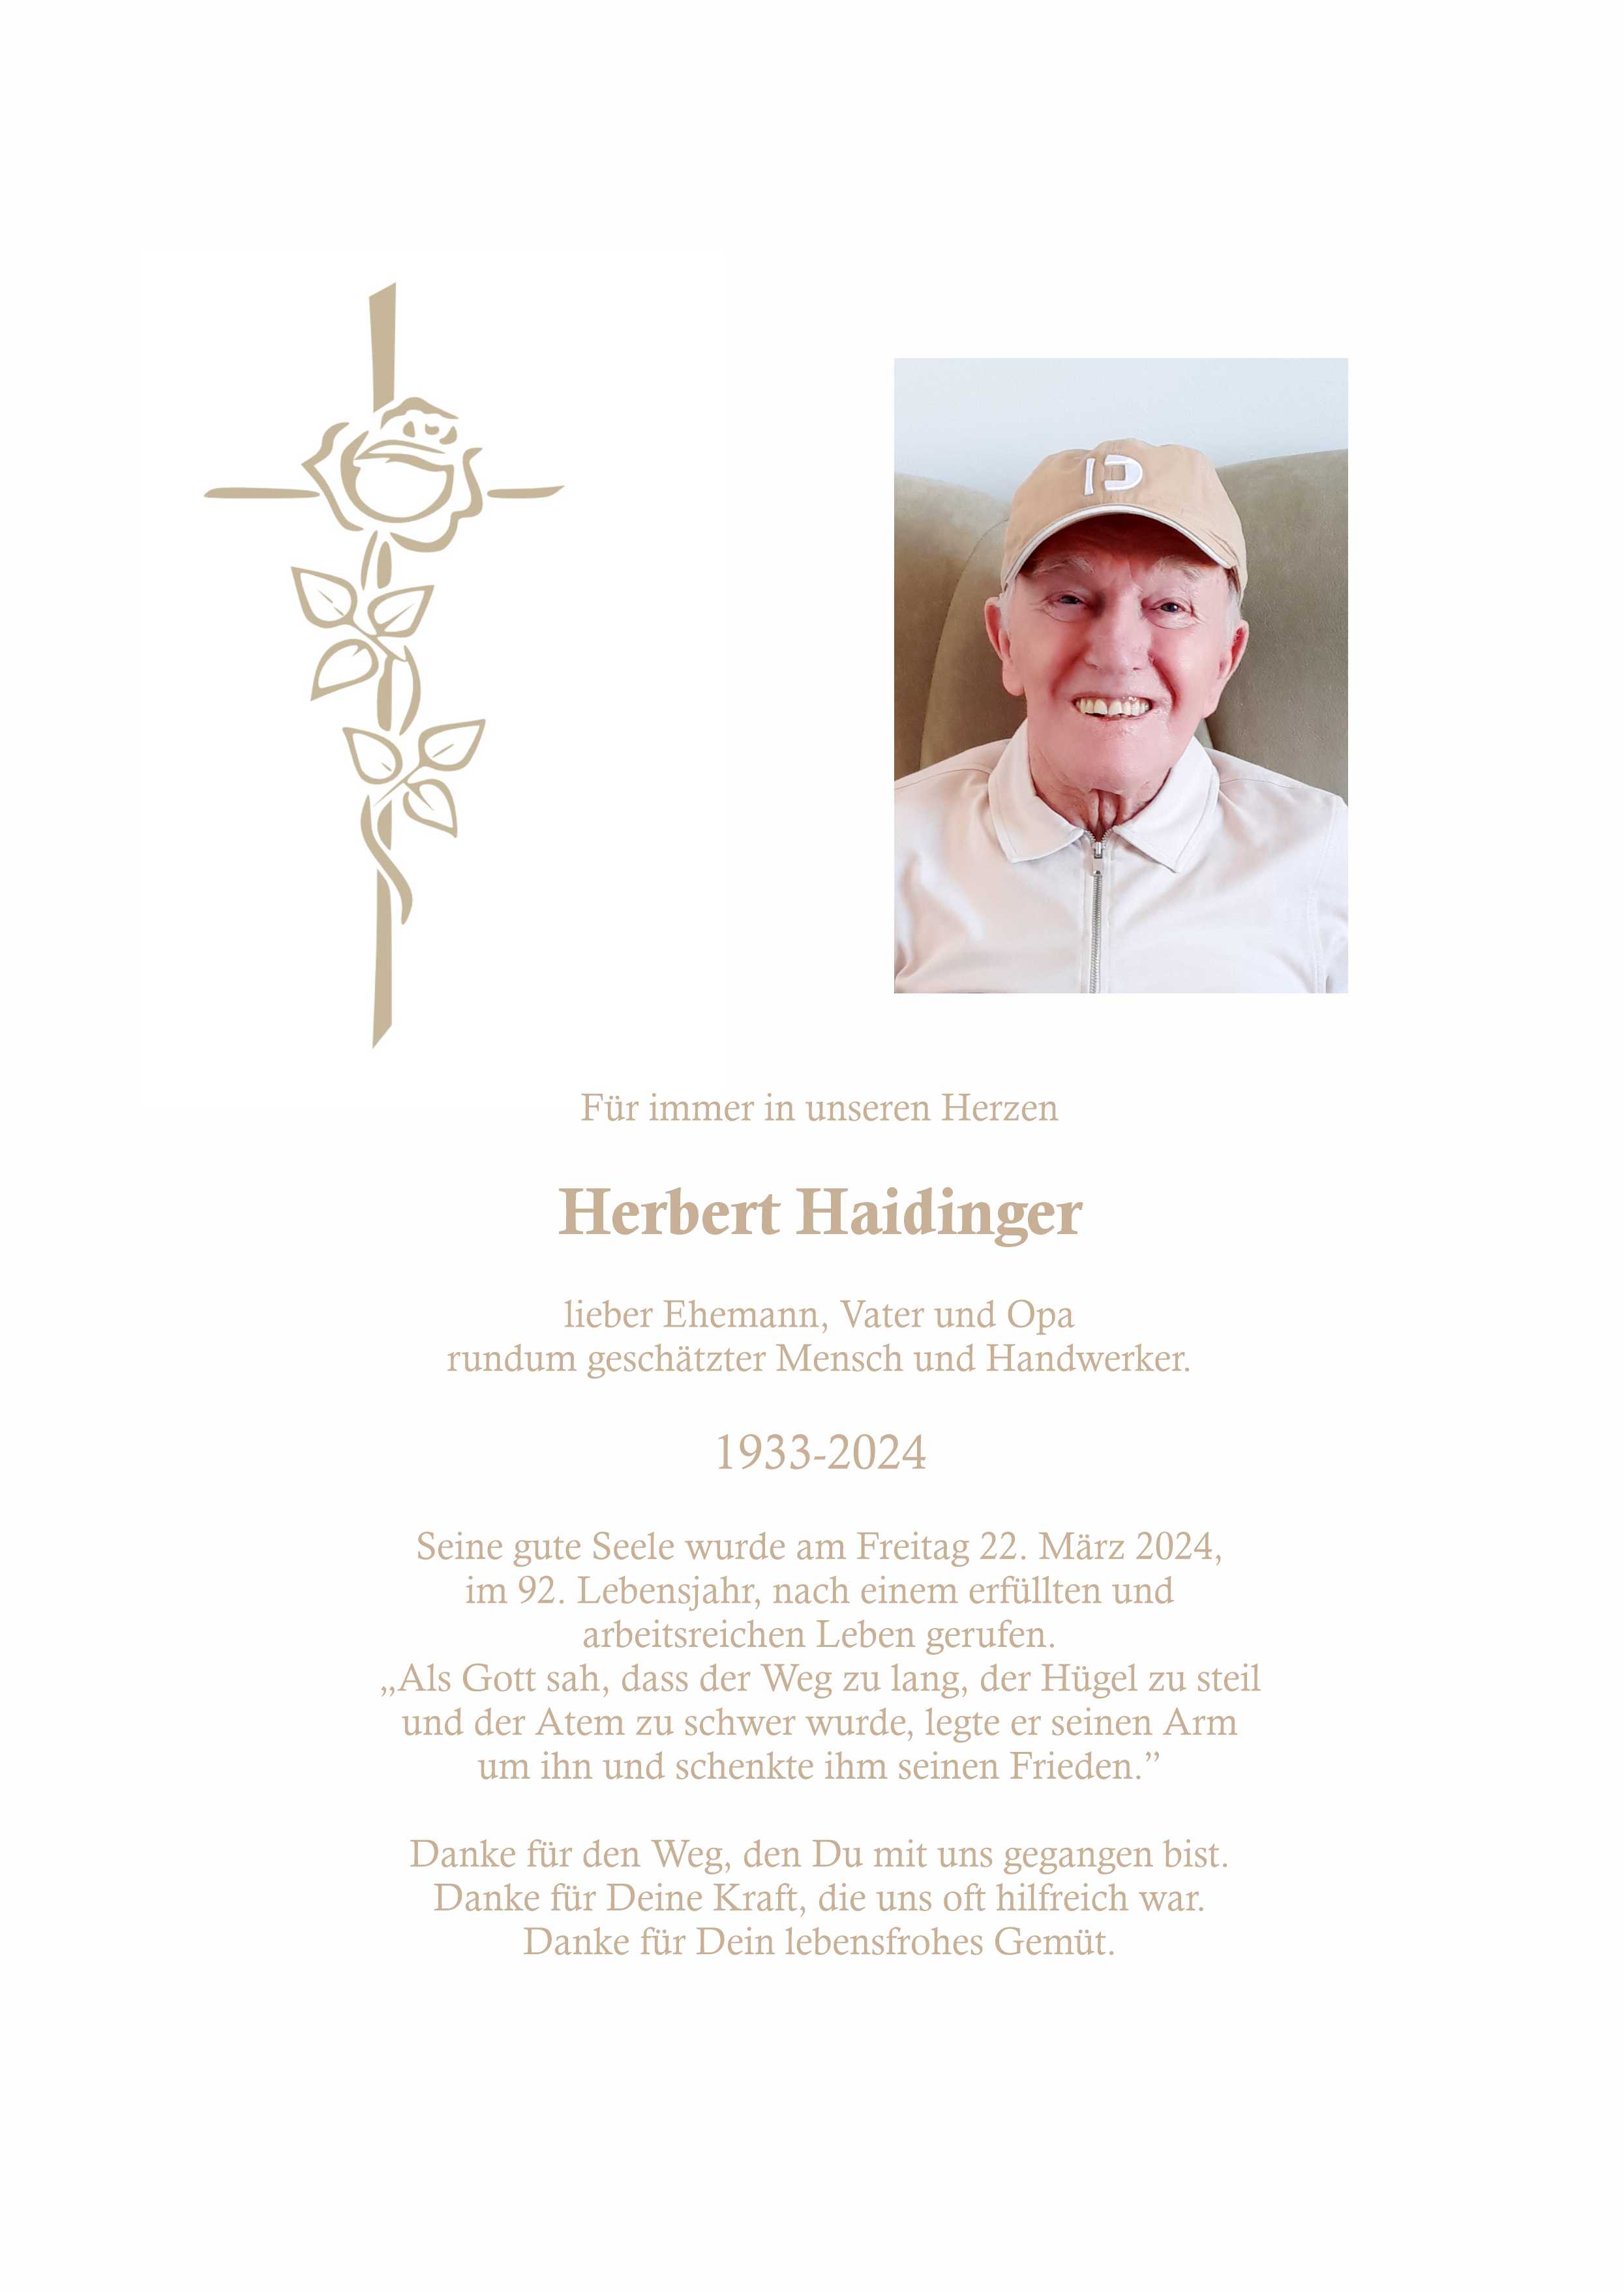 Herbert Haidinger (Wels)